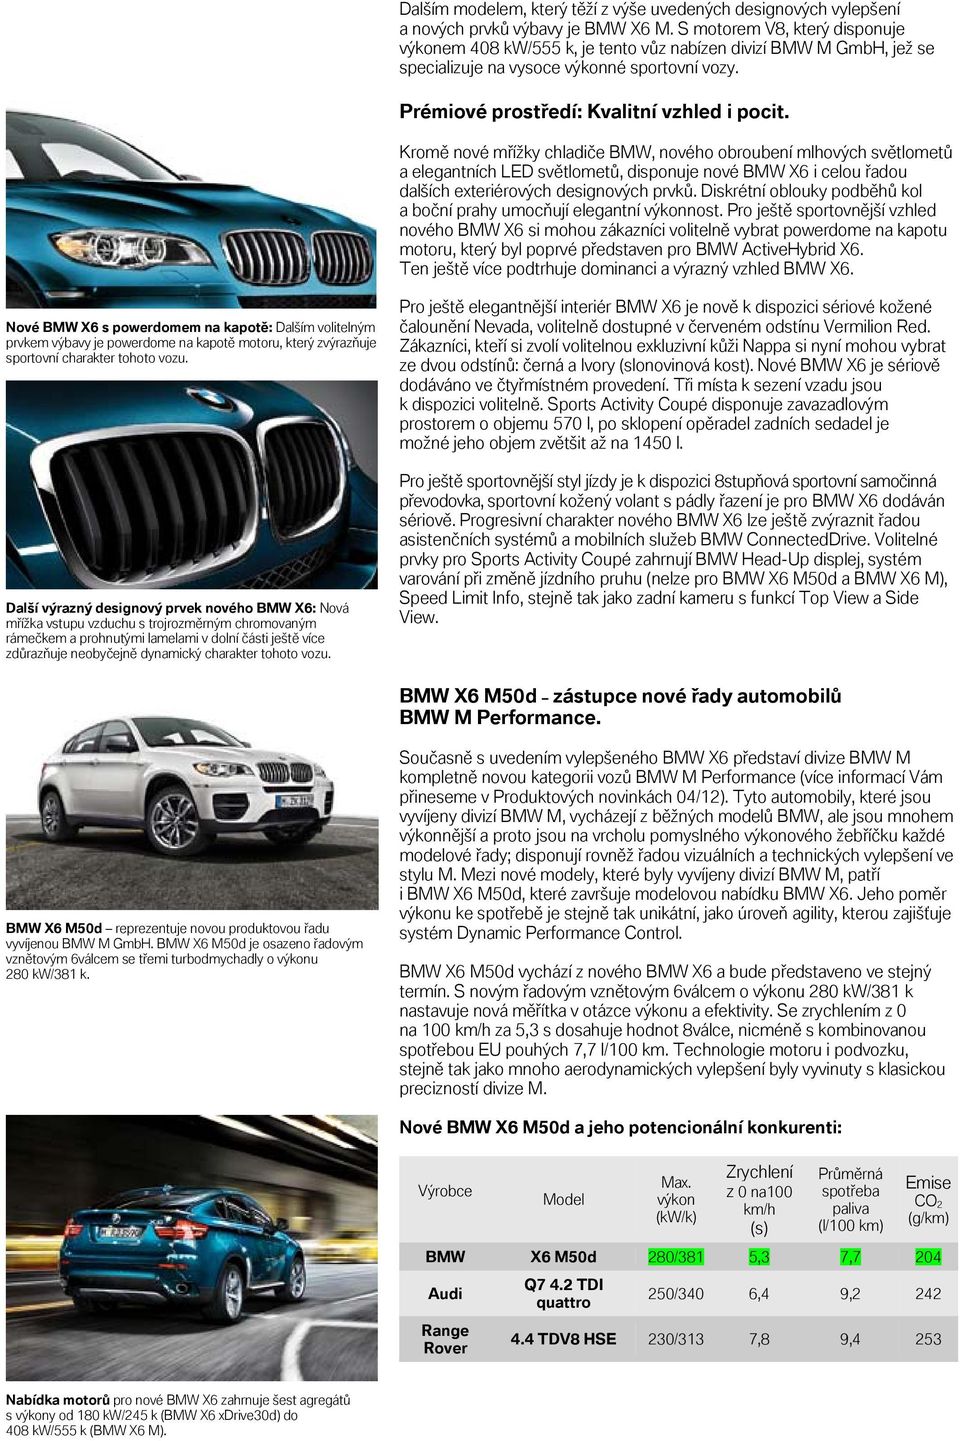 Kromě nové mřížky chadiče BMW, nového obroubení mhových světometů a eegantních LED světometů, disponuje nové BMW X6 i ceou řadou daších exteriérových designových prvků.